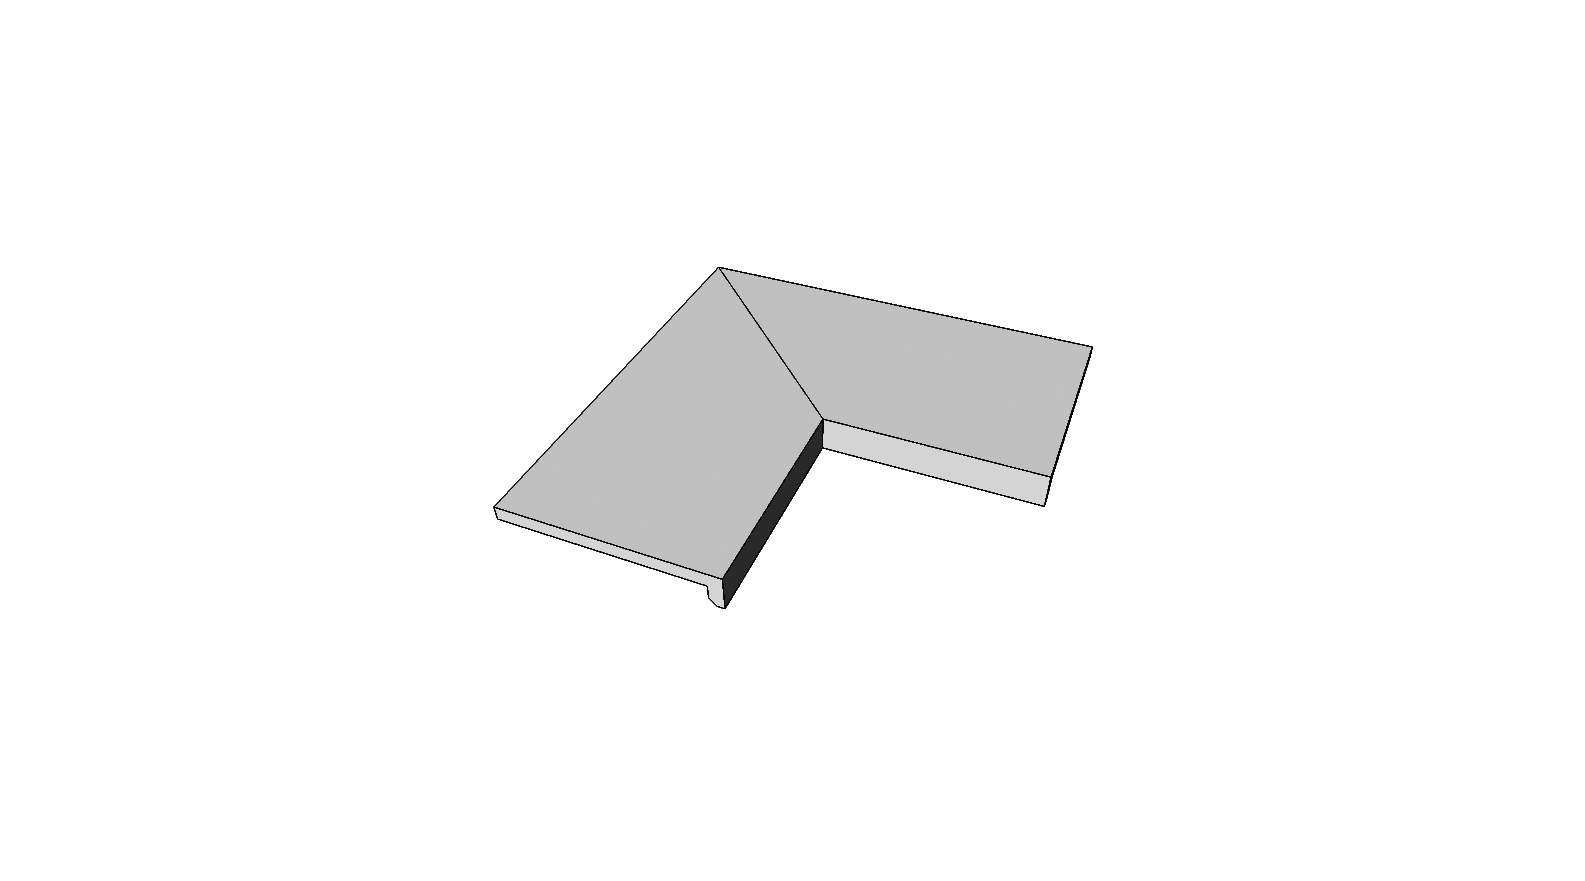 Margelle bord en L descendant collé angle int. complet (2 pièces) <span style="white-space:nowrap;">30x60x5 cm</span>   <span style="white-space:nowrap;">ép. 20mm</span>